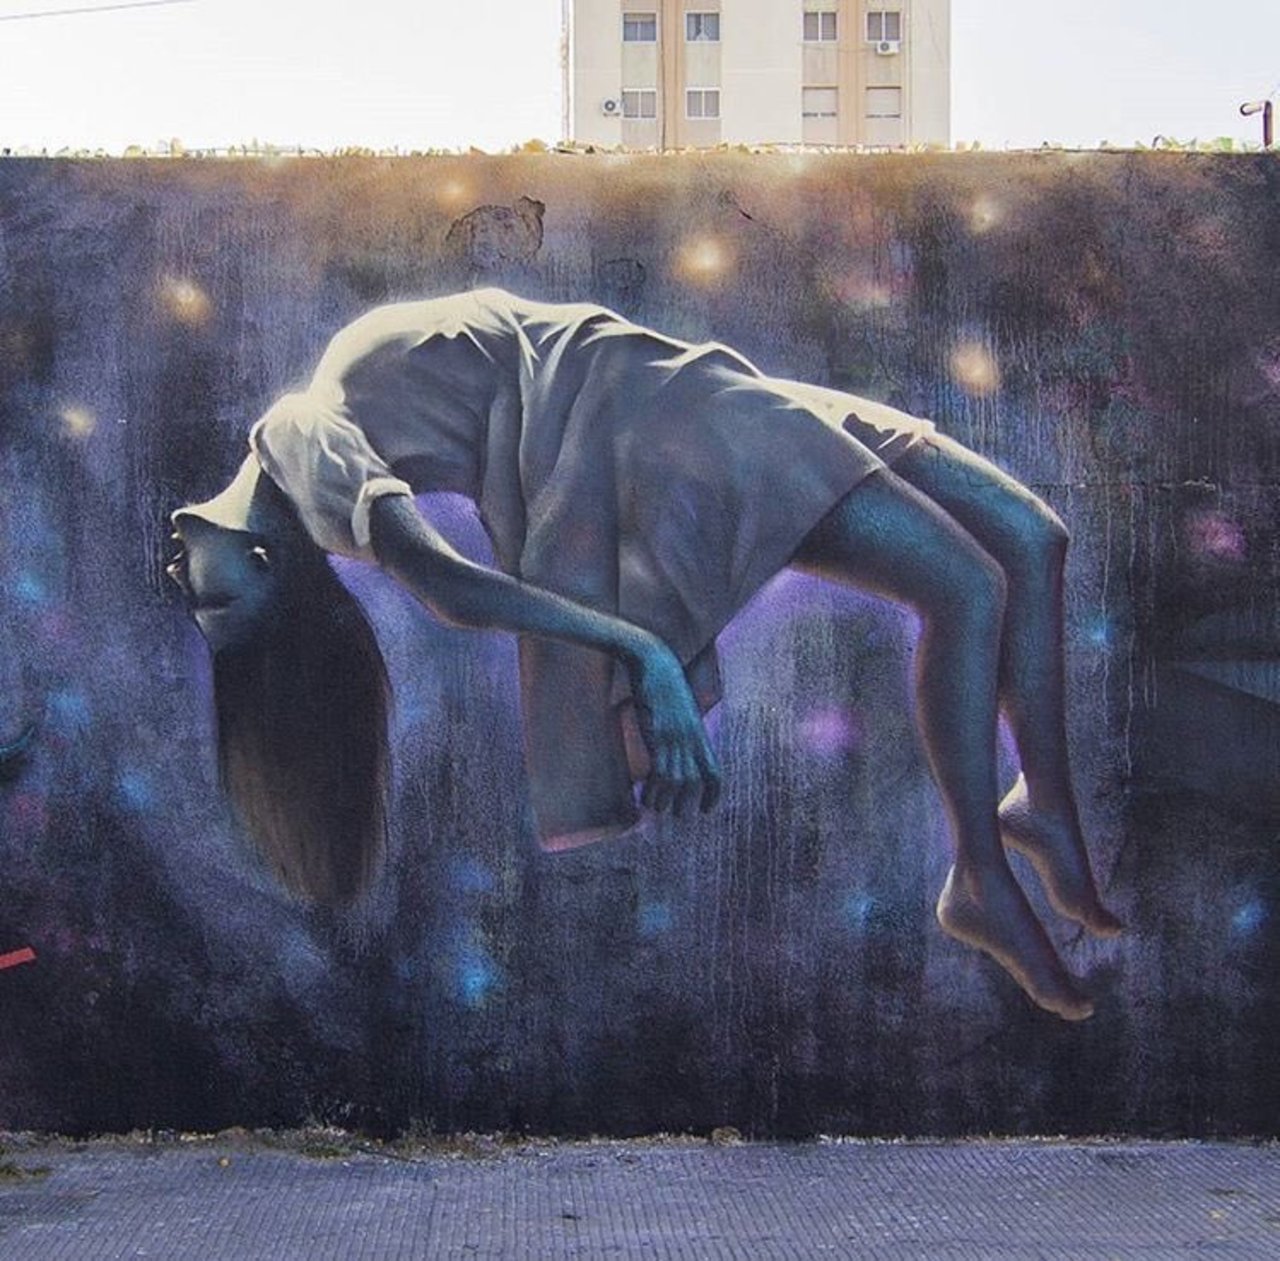 #mural by LionGraff #BuenosAires #Argentina #art #graffiti #streetart https://t.co/WpyerSnV9k